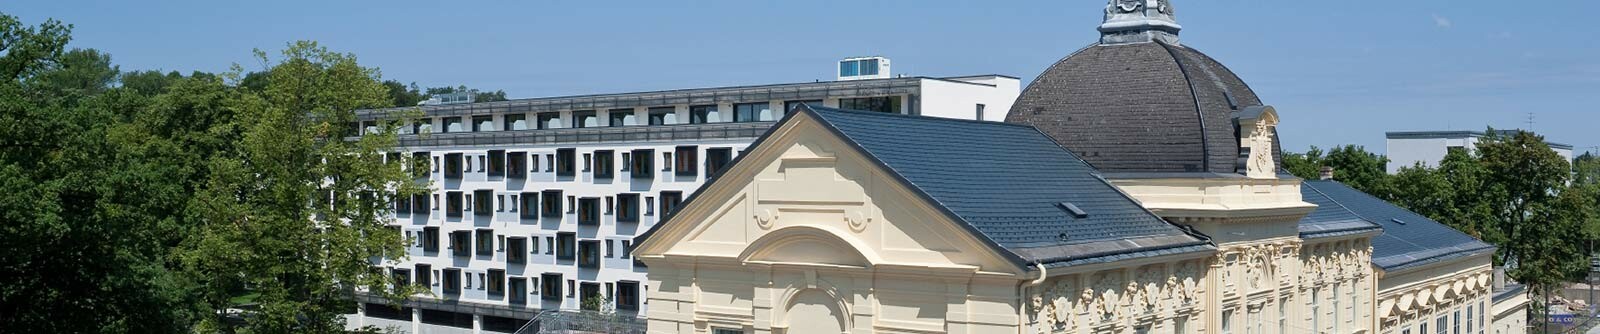 Denkmalgeschützte Stadtsäle in St. Pölten mit neuer Dacheindeckung aus Aluminium von PREFA in der Farbe Anthrazit.